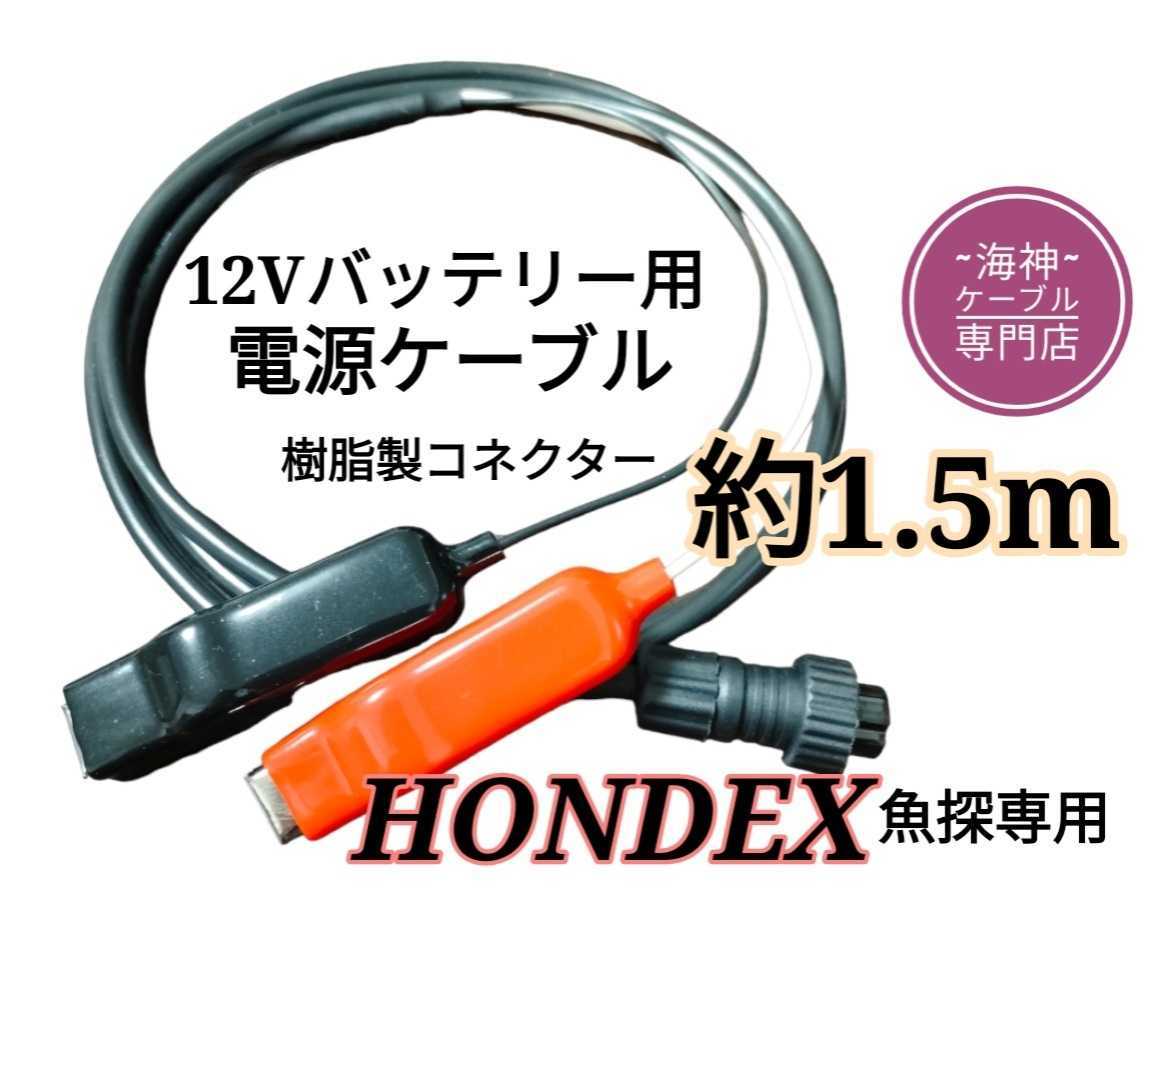 モバイルバッテリーでホンデックス(HONDEX)魚探を動かす電源ケーブル1.5m